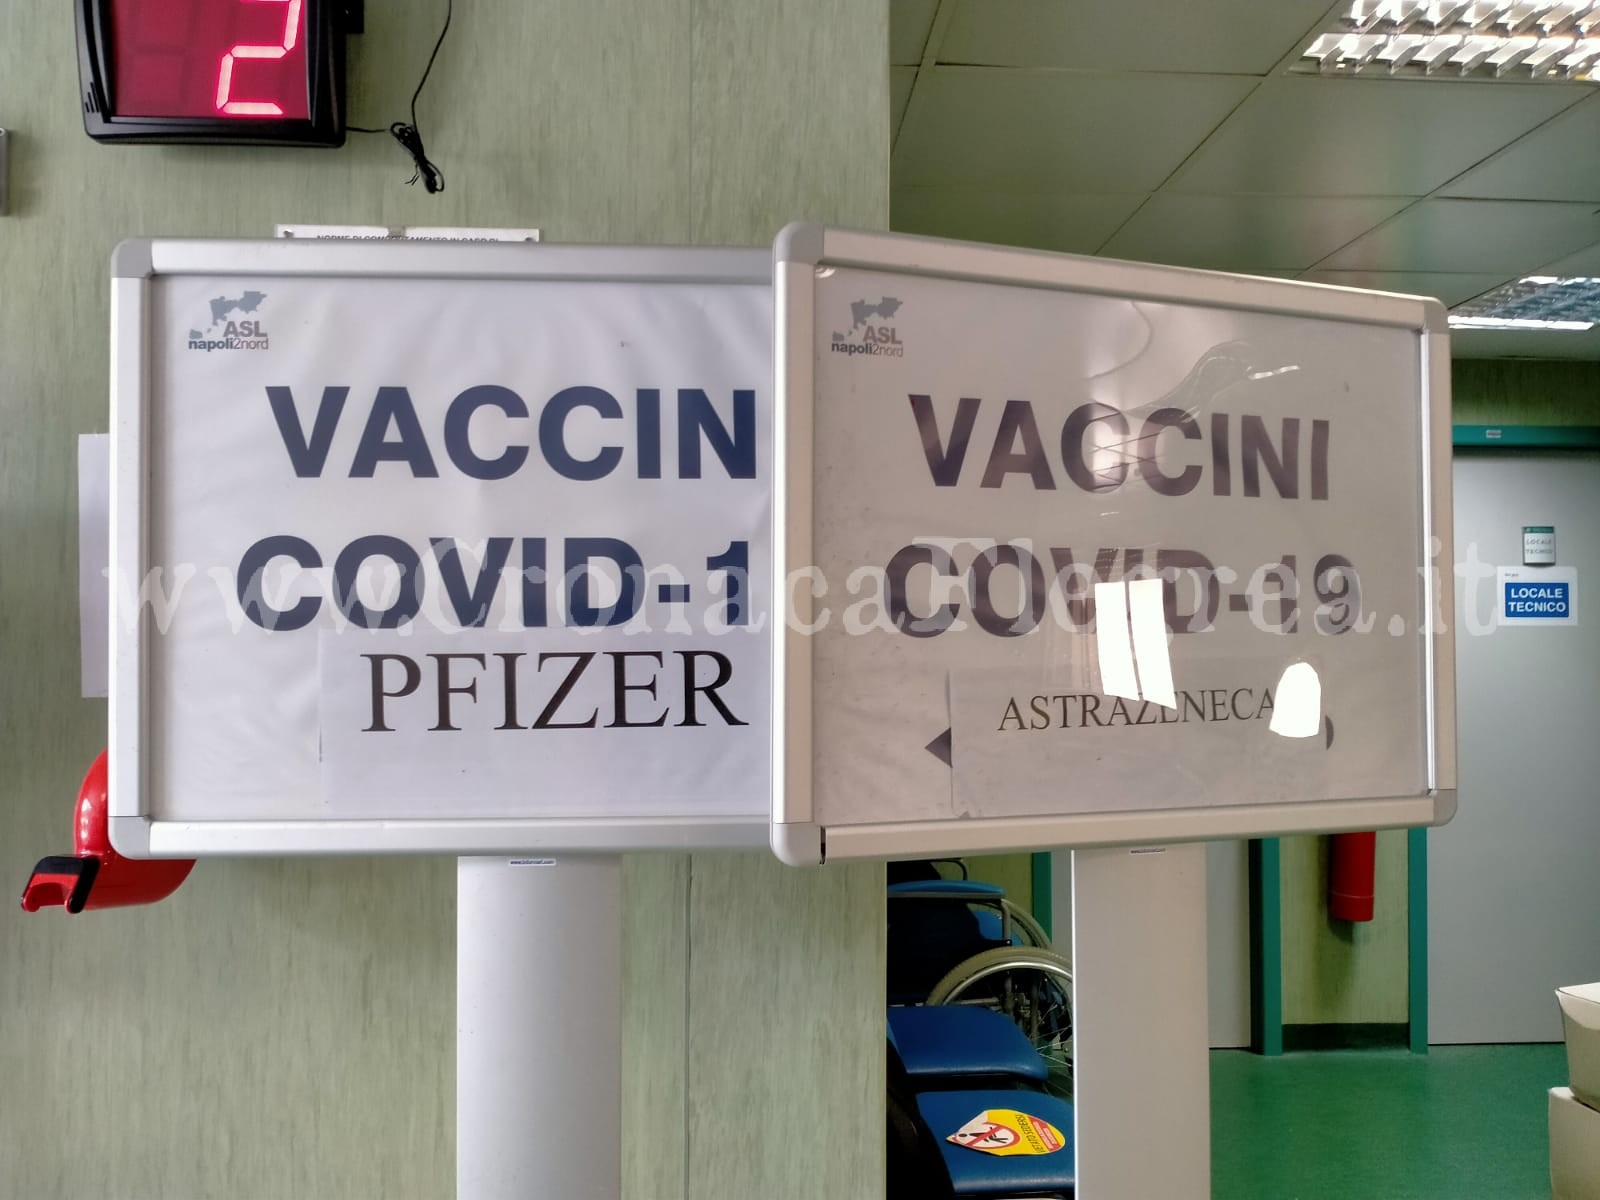 Quarta dose di vaccino: ipotesi riapertura centro vaccinale a Pozzuoli